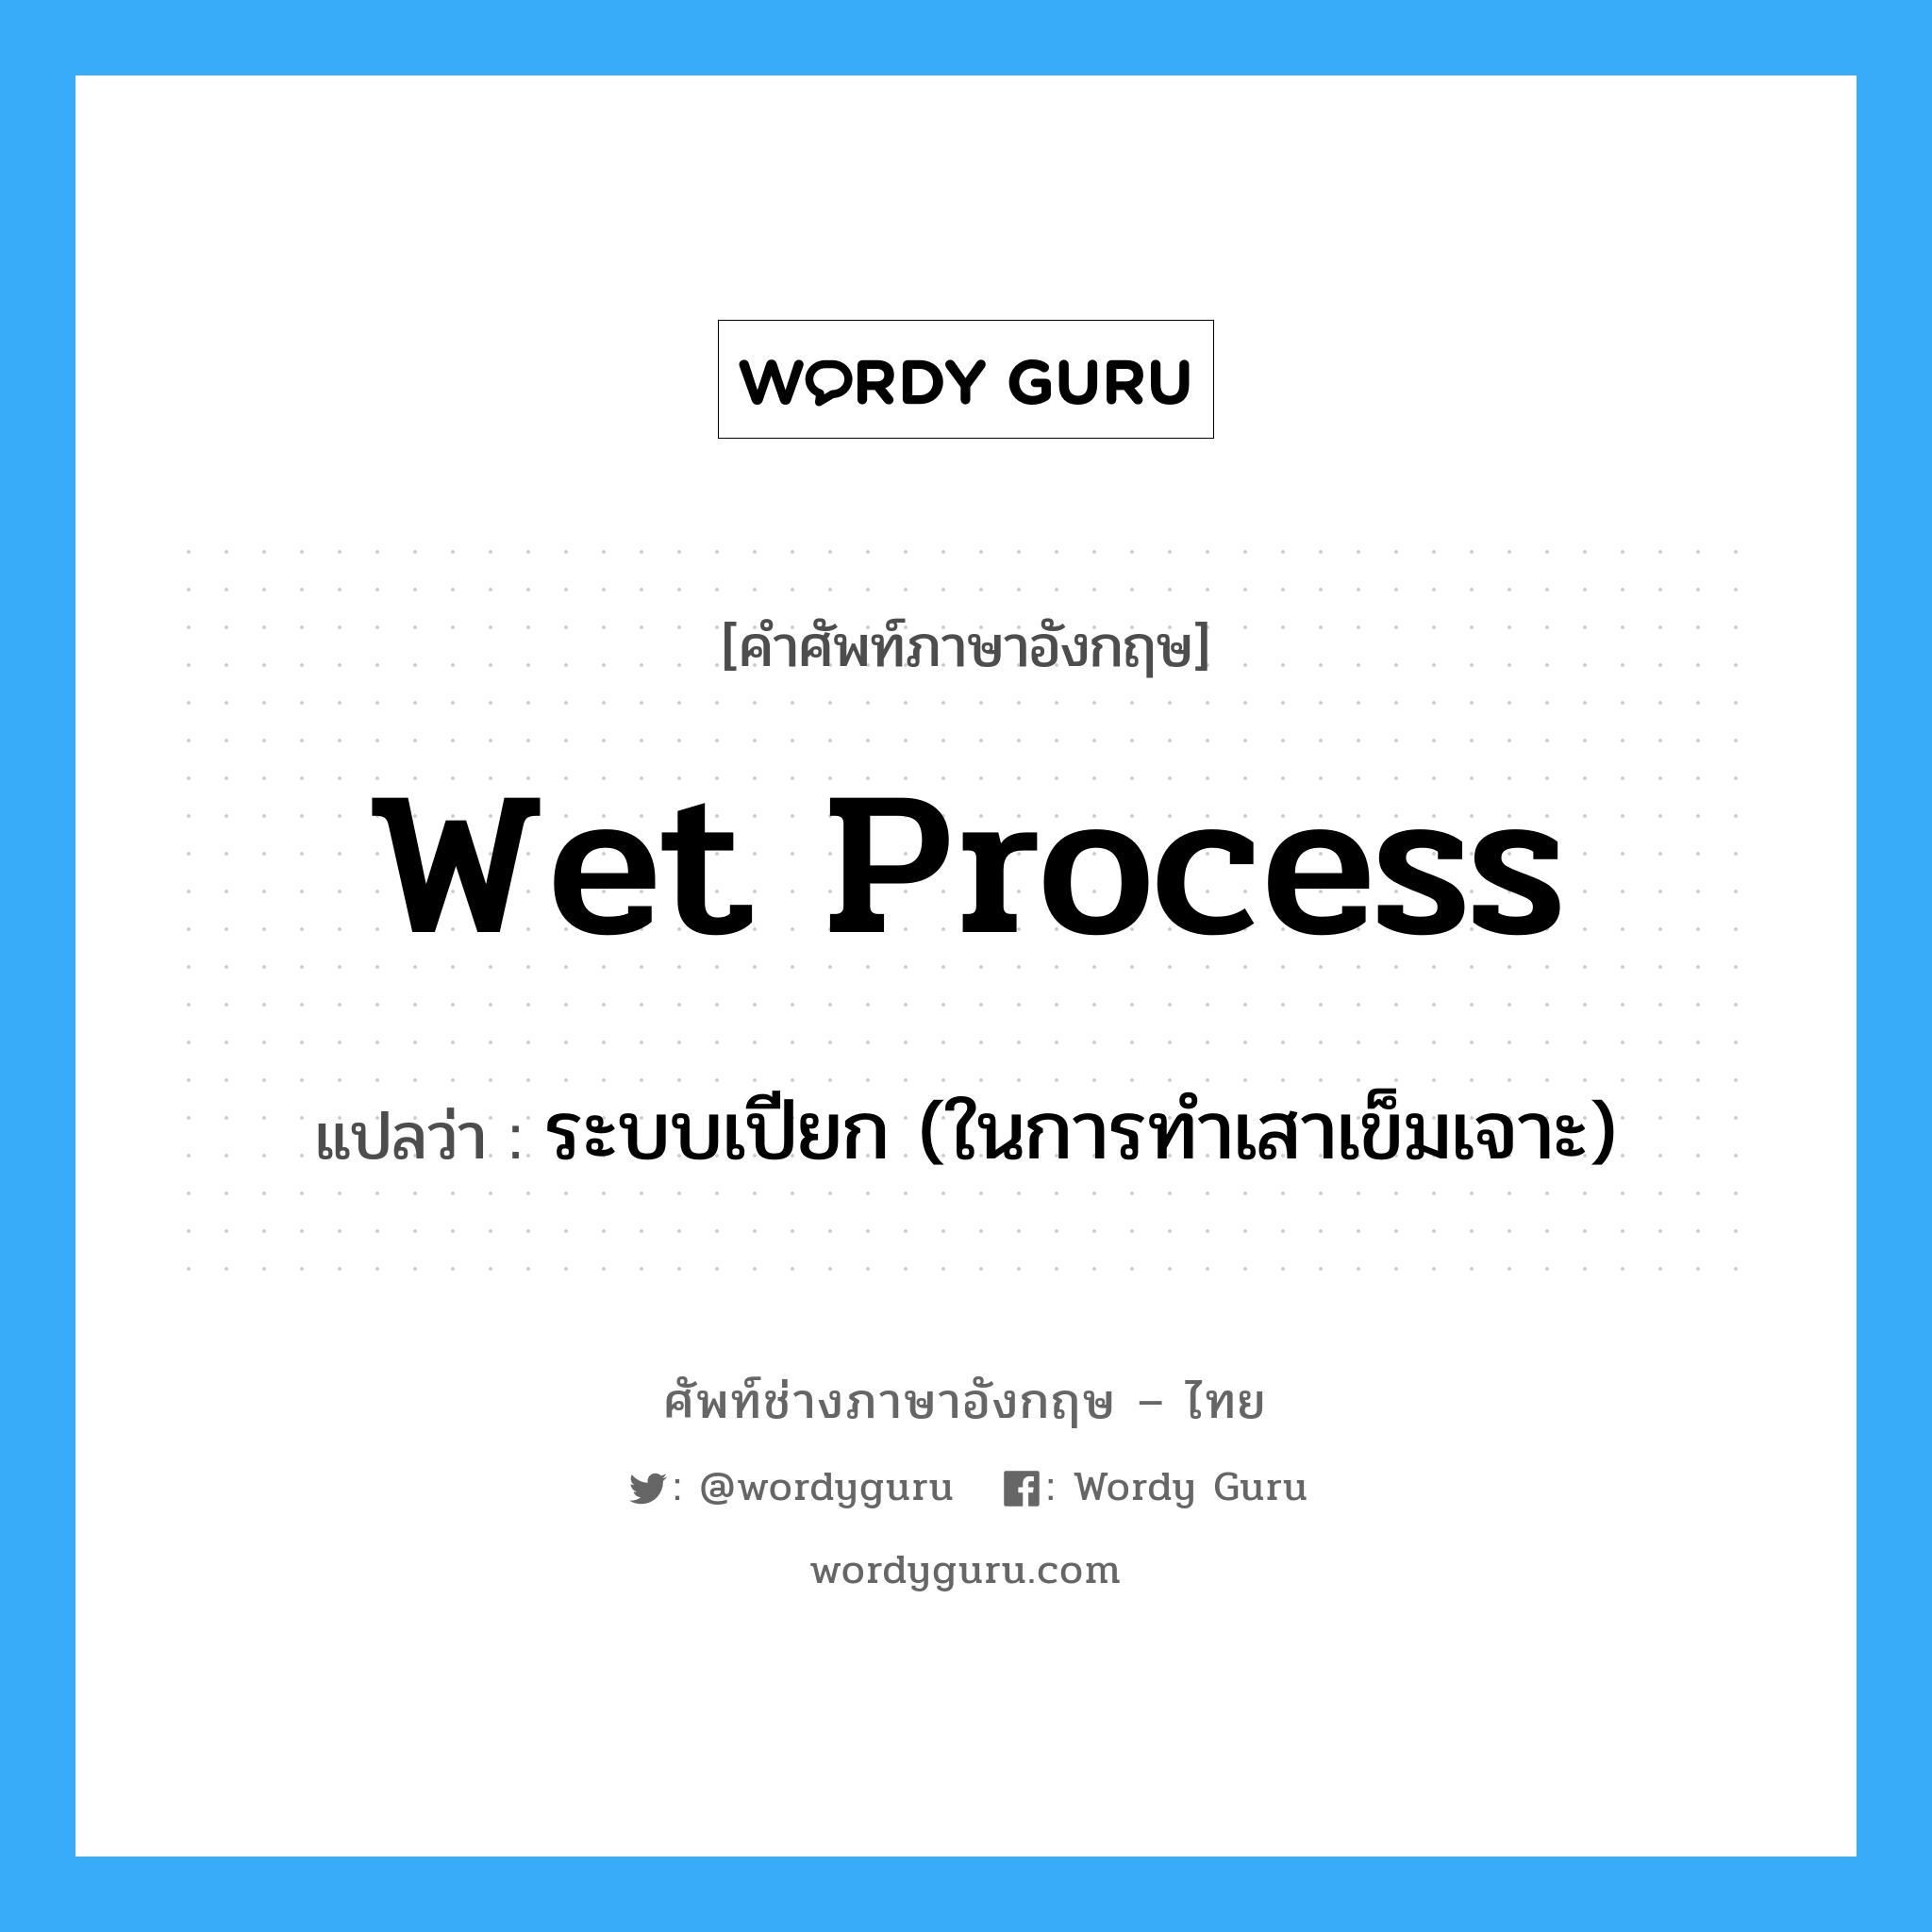 wet process แปลว่า?, คำศัพท์ช่างภาษาอังกฤษ - ไทย wet process คำศัพท์ภาษาอังกฤษ wet process แปลว่า ระบบเปียก (ในการทำเสาเข็มเจาะ)